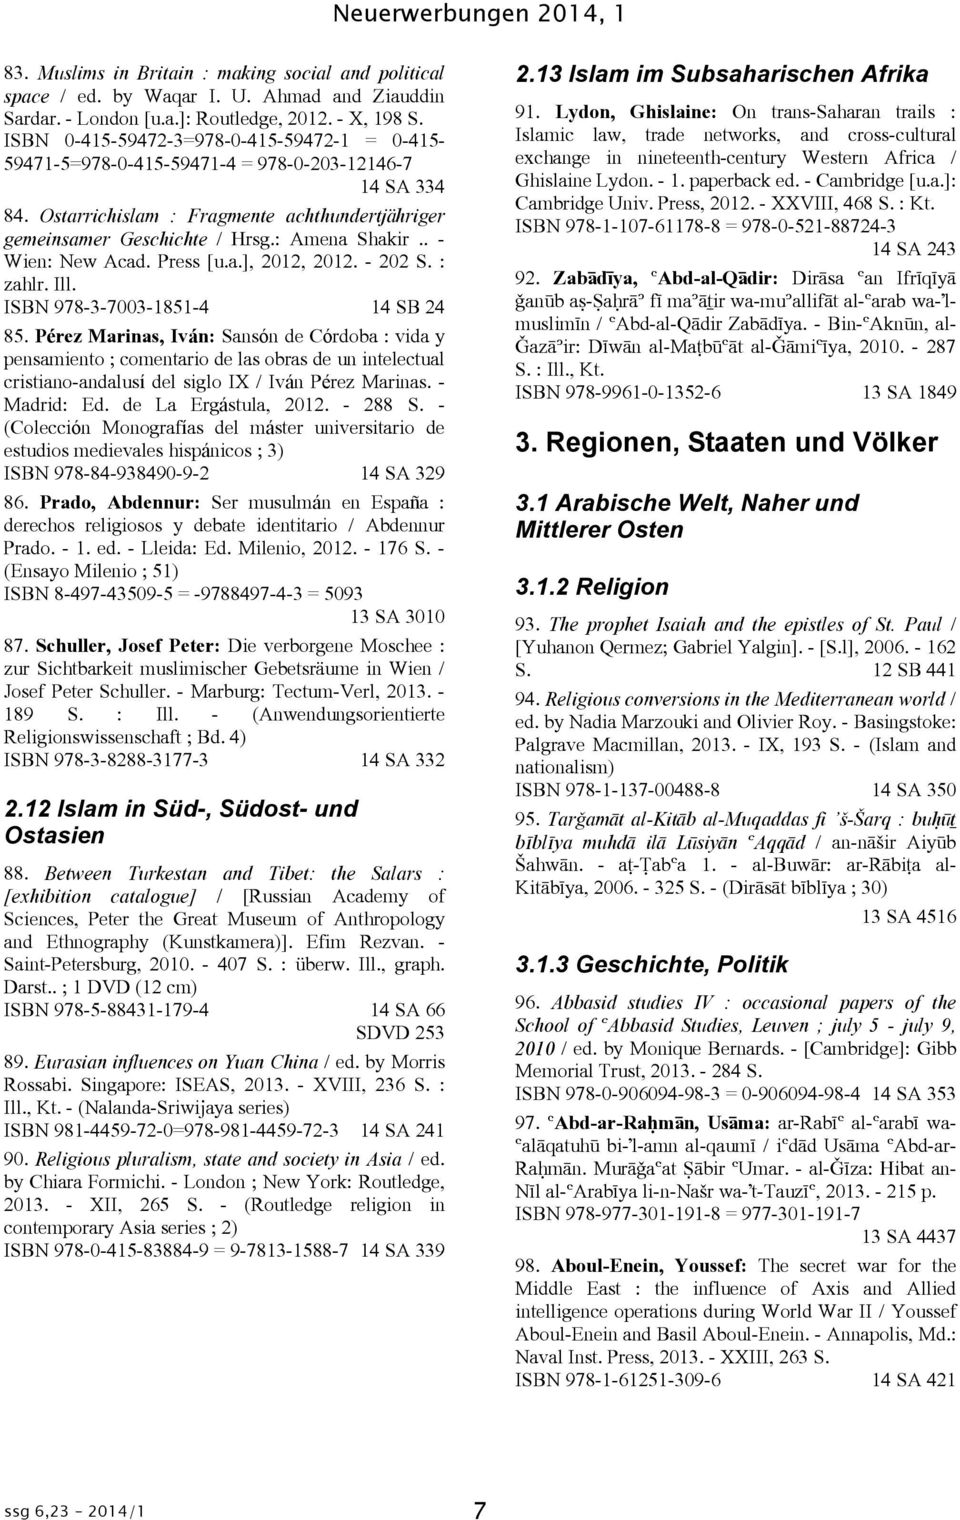 . - Wien: New Acad. Press [u.a.], 2012, 2012. - 202 S. : zahlr. Ill. ISBN 978-3-7003-1851-4 14 SB 24 85.